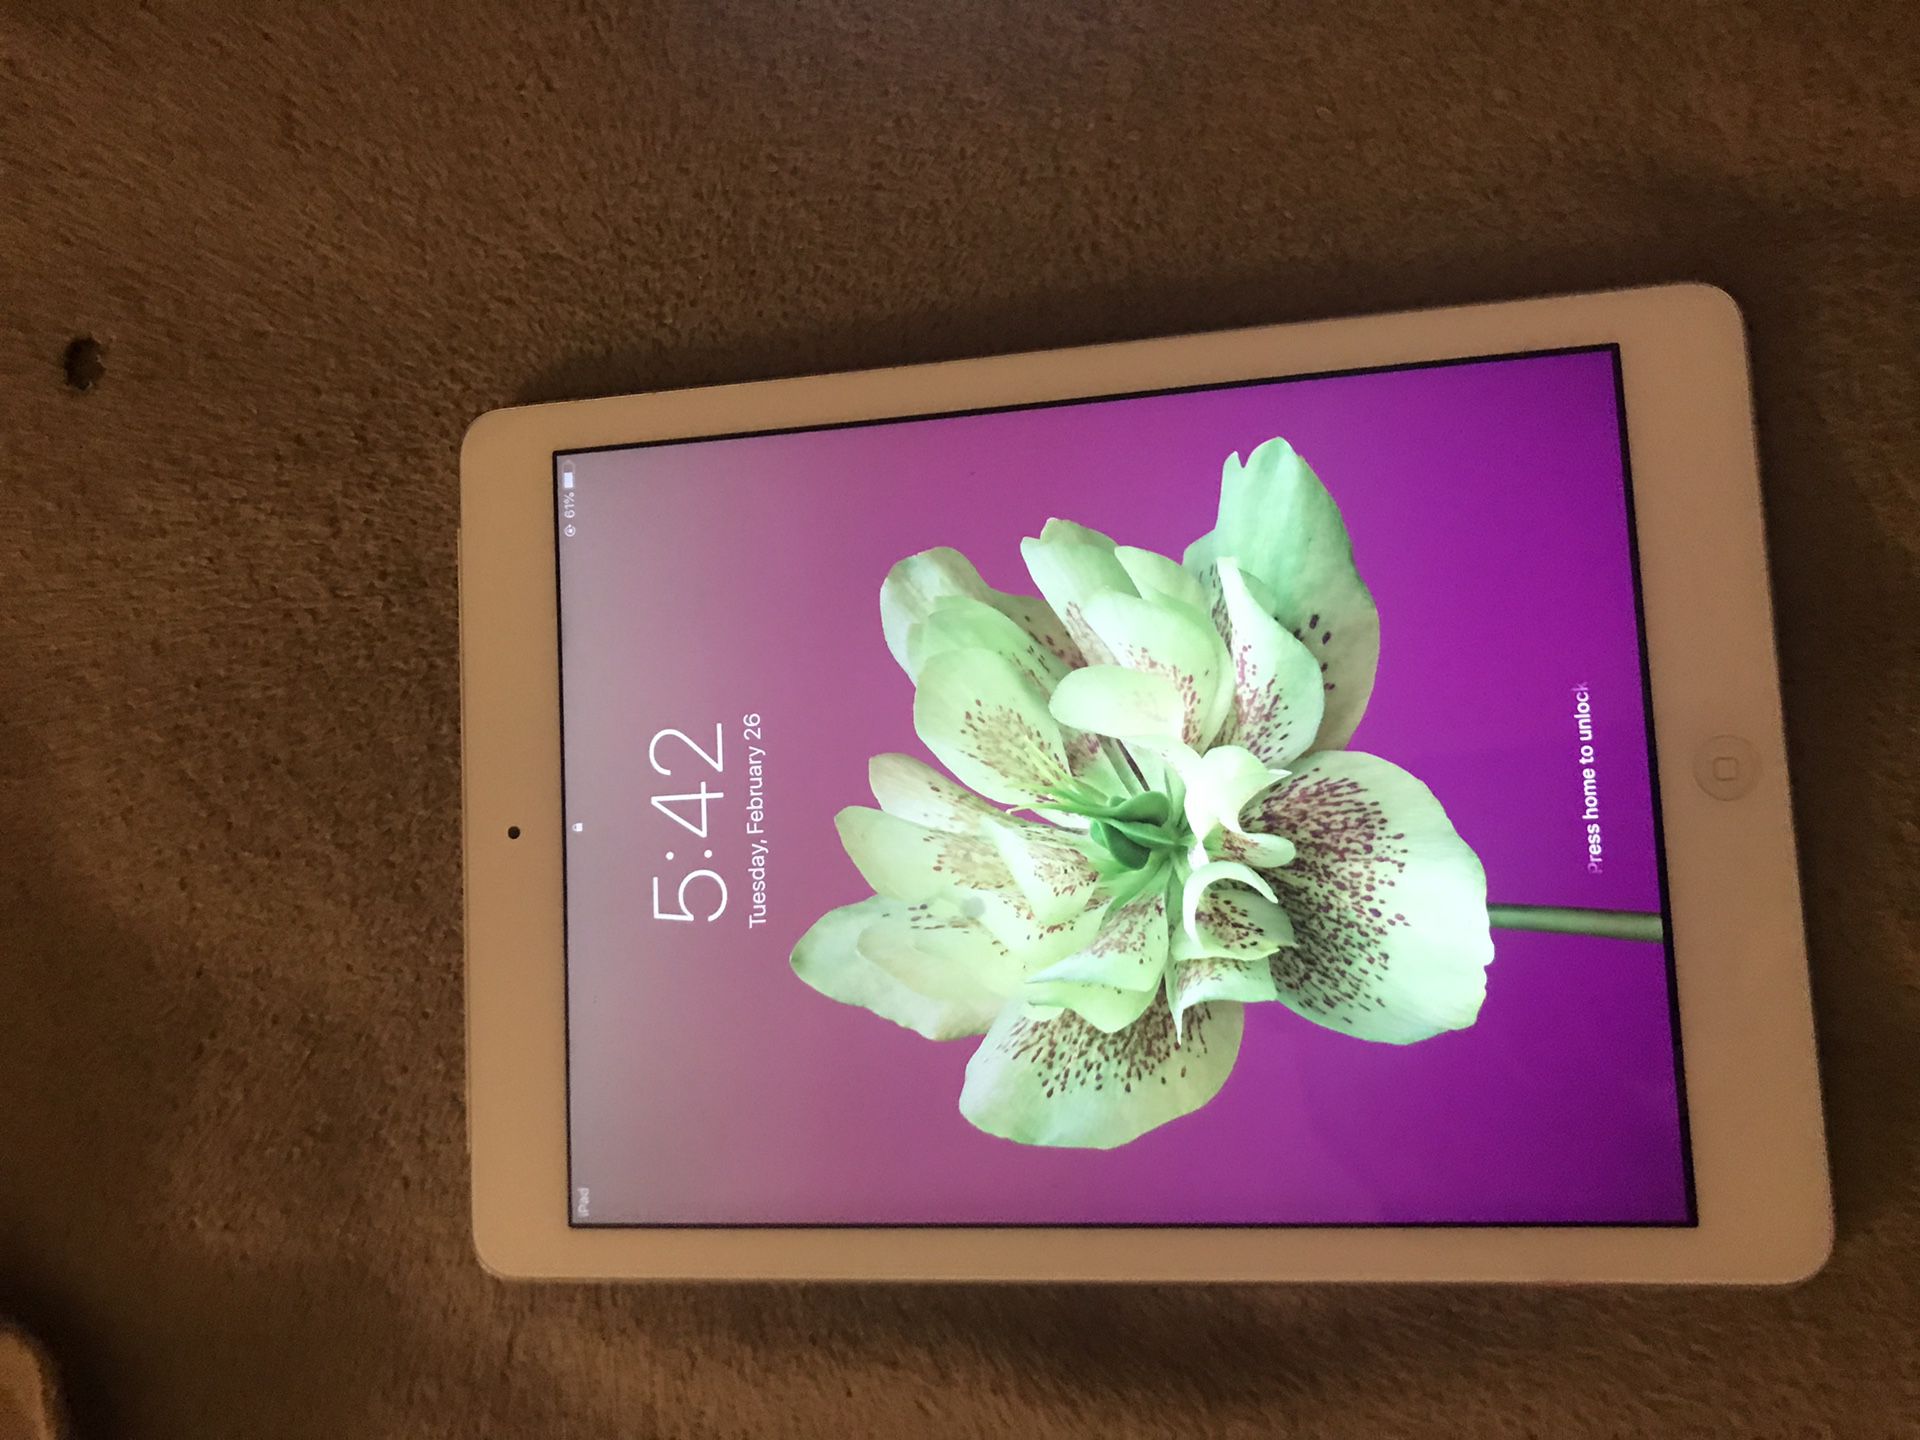 Apple iPad 3 locked screen no iCloud